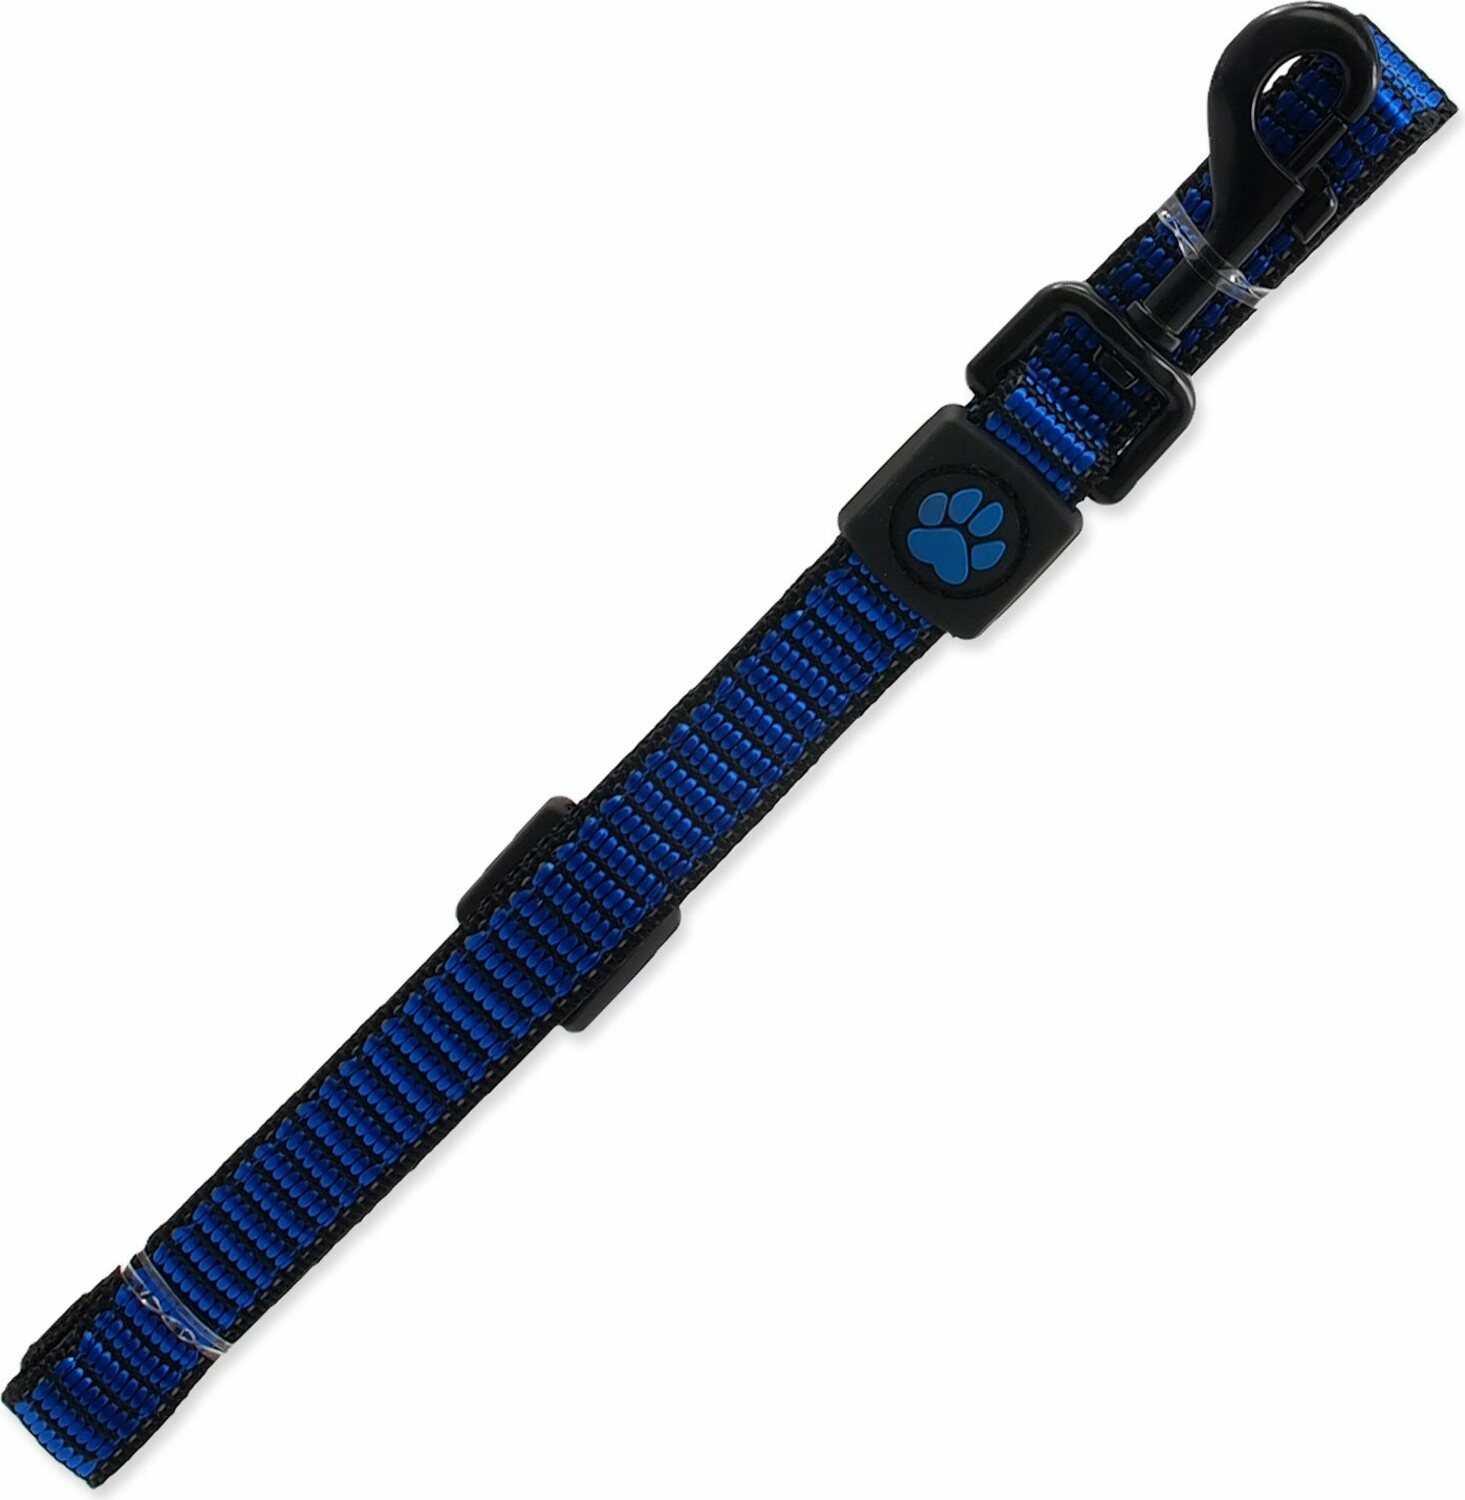 Vodítko Active Dog Strong M modré 2x120cm